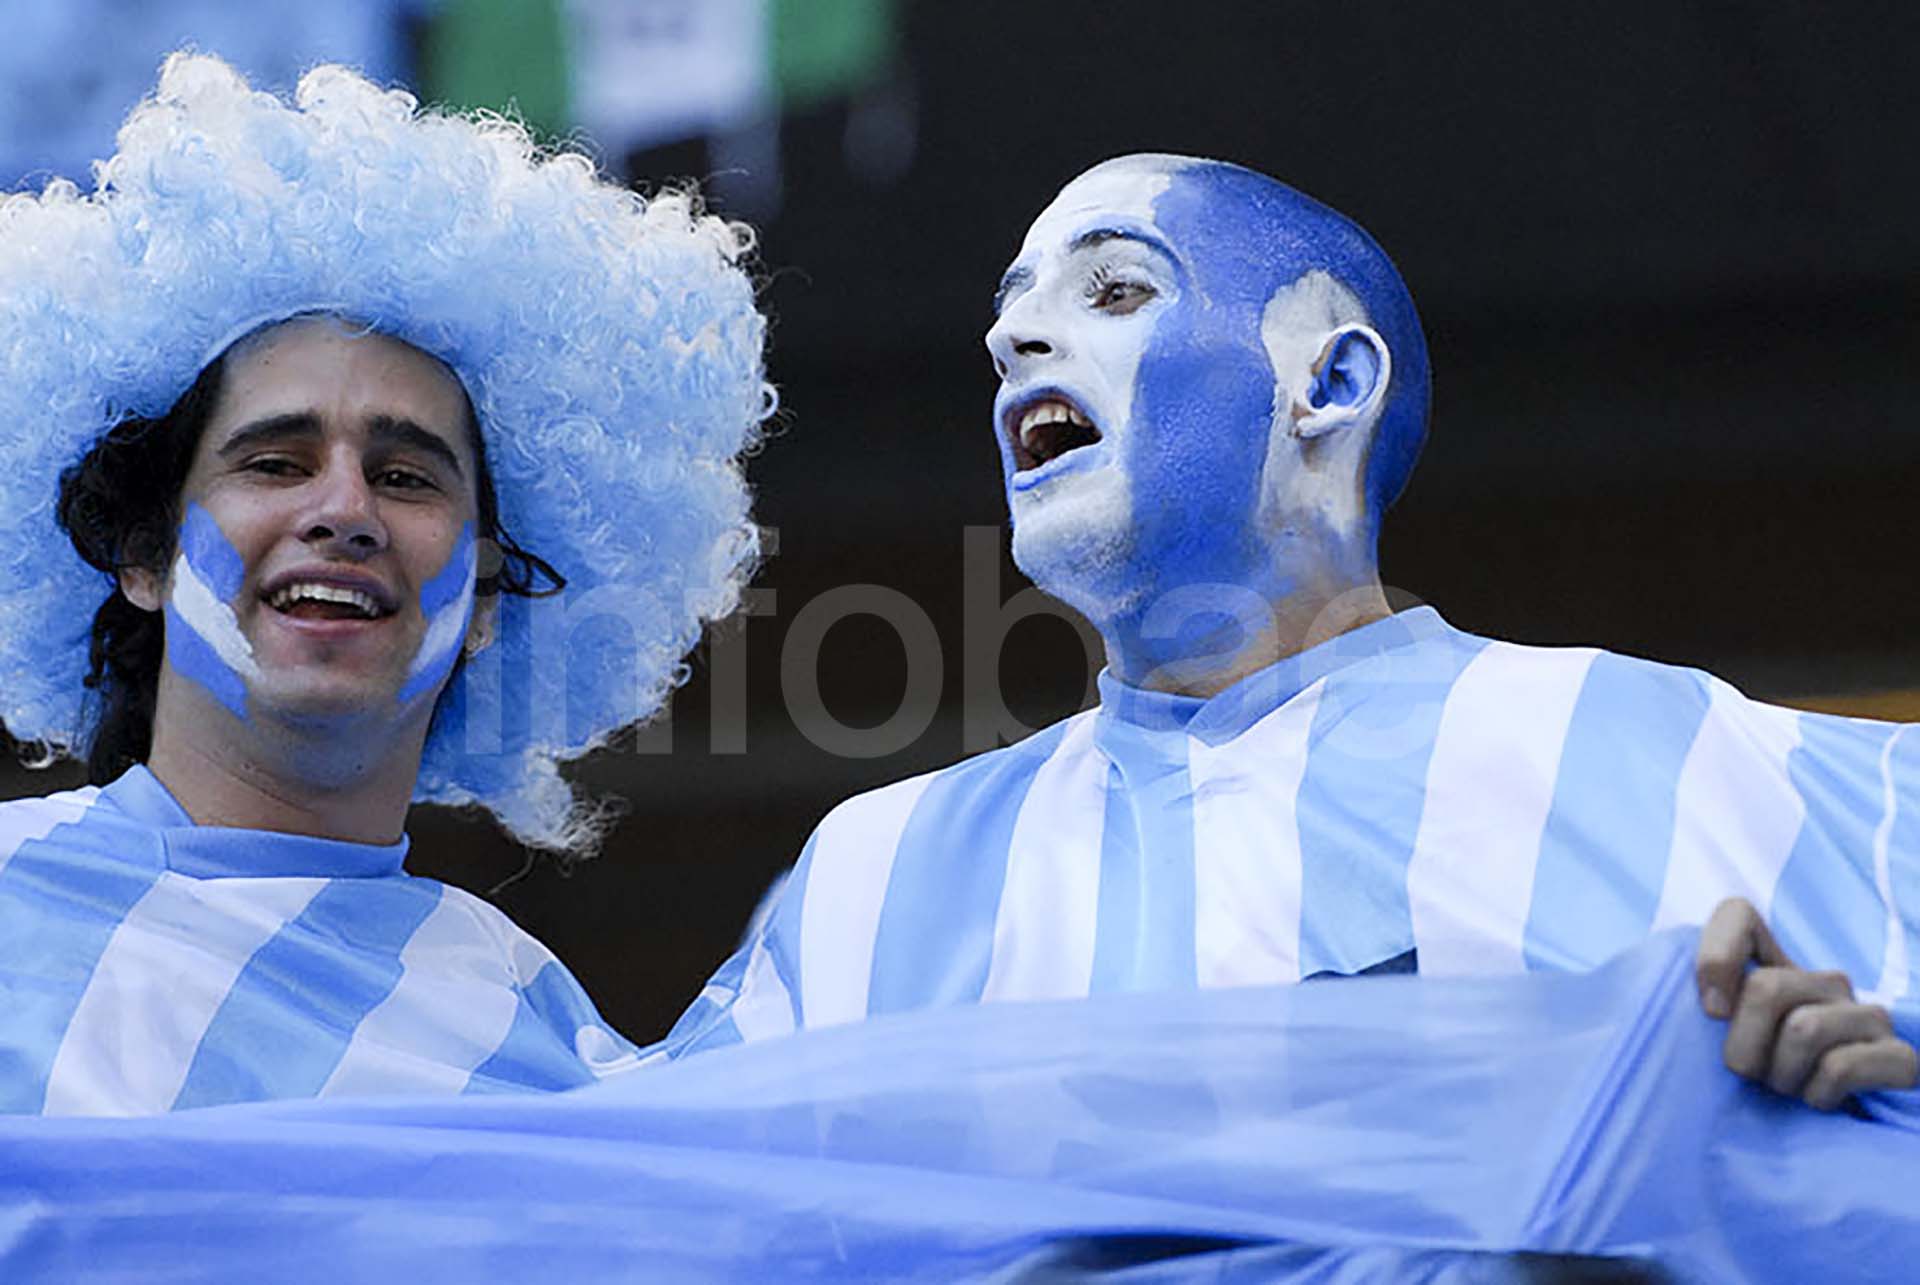 Hinchas argentinos en el Mundial de Fútbol Rusia 2018 (Foto: Mauro Alfieri)